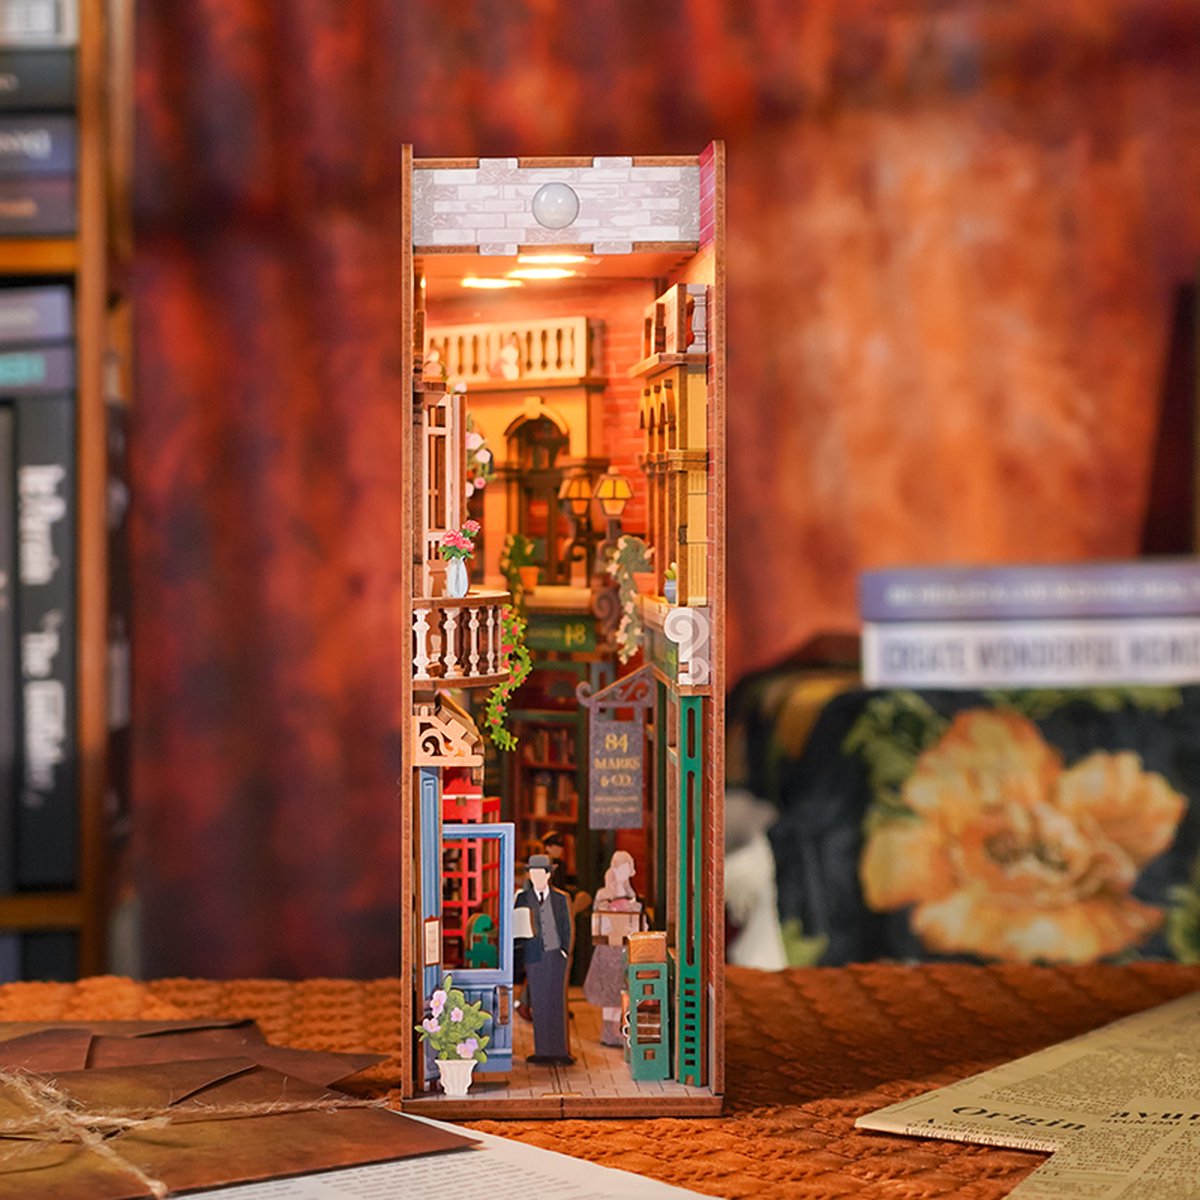 Tonecheer Book Nook: 84 Charing Cross Road | Houten 3D-puzzel | Verlicht | Sensor | DIY-miniatuurhuis | TQ114 - TONECHEER